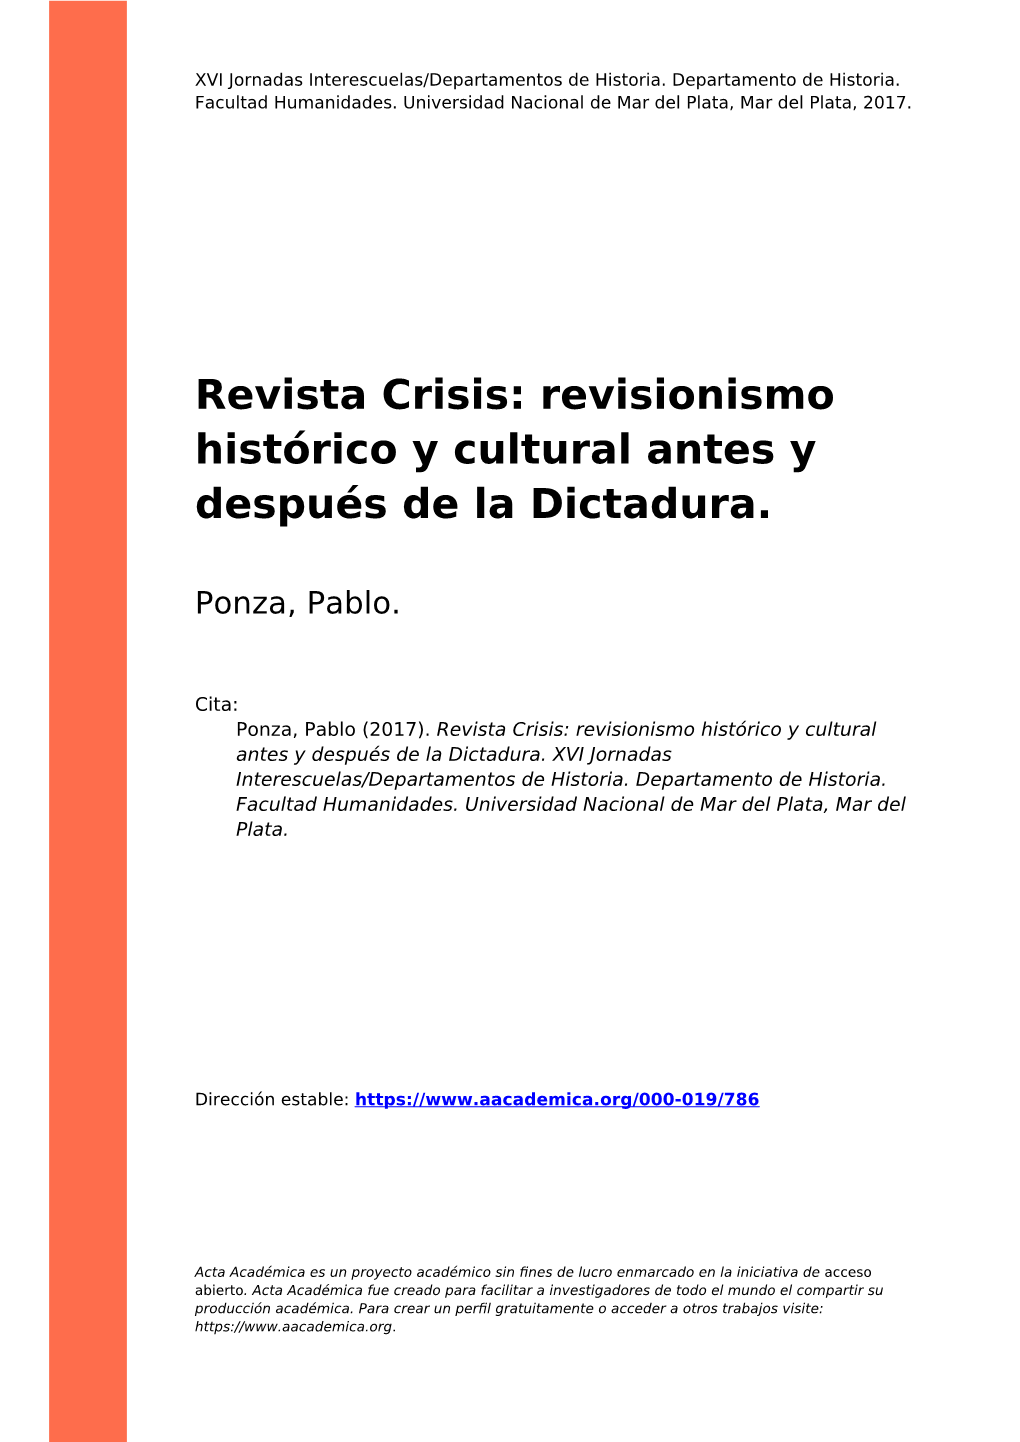 Revista Crisis: Revisionismo Histórico Y Cultural Antes Y Después De La Dictadura